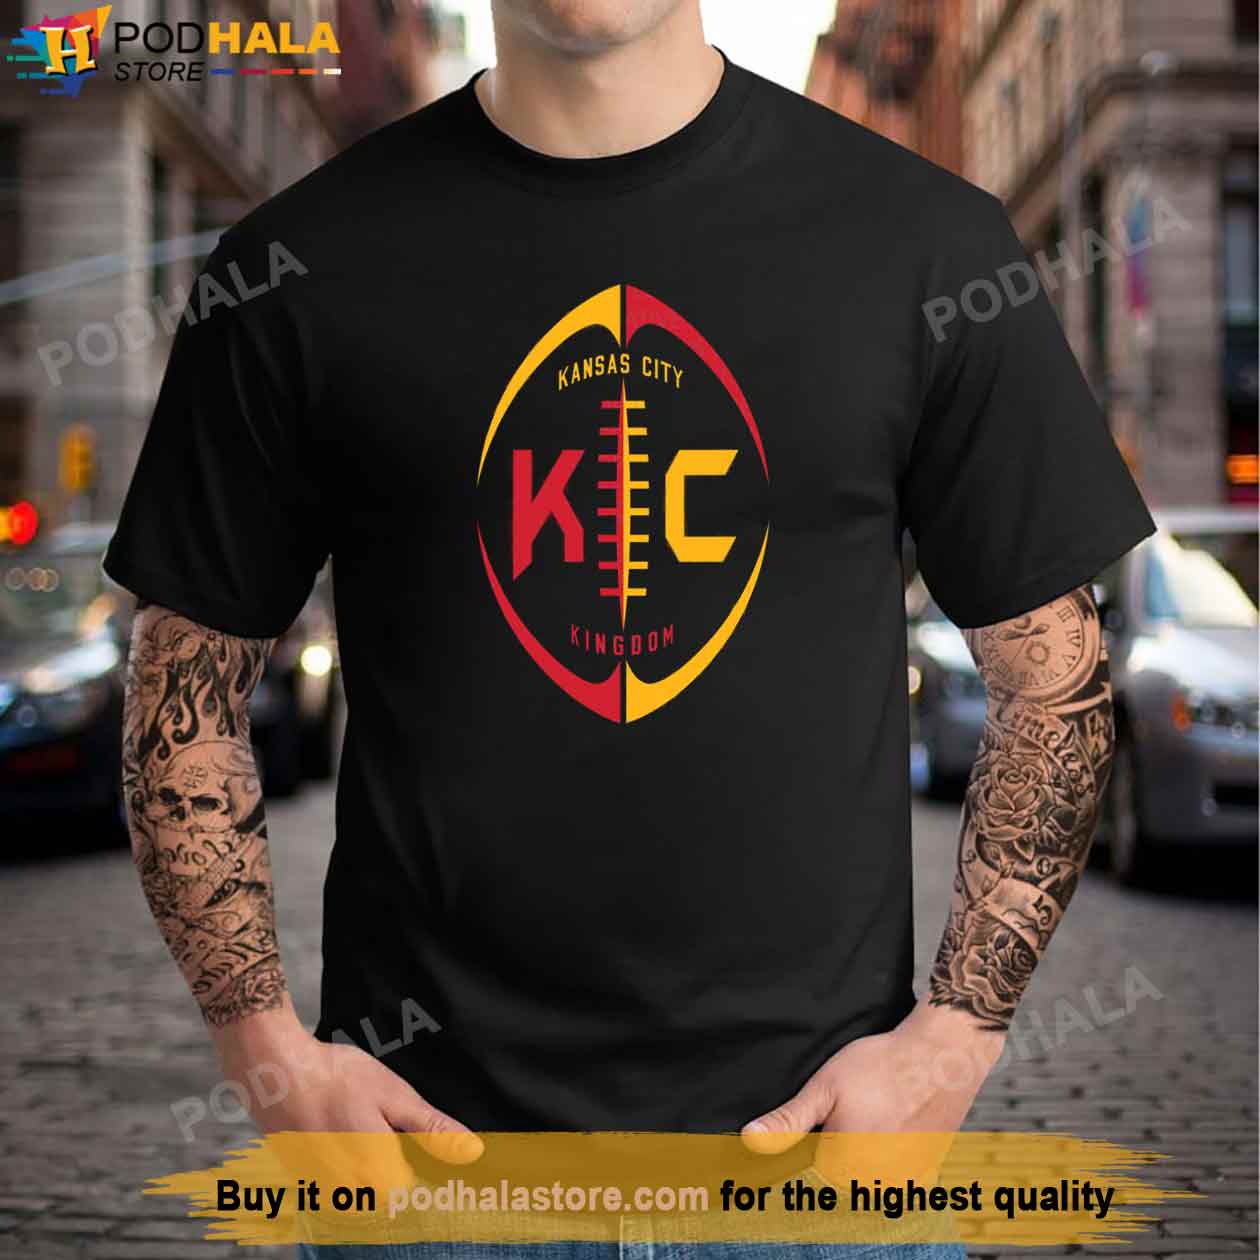 SUPER BOWL SHIRT SALE Game Souvenir LVII 57 NFL 2023 cheap tshirt football  EAGLE